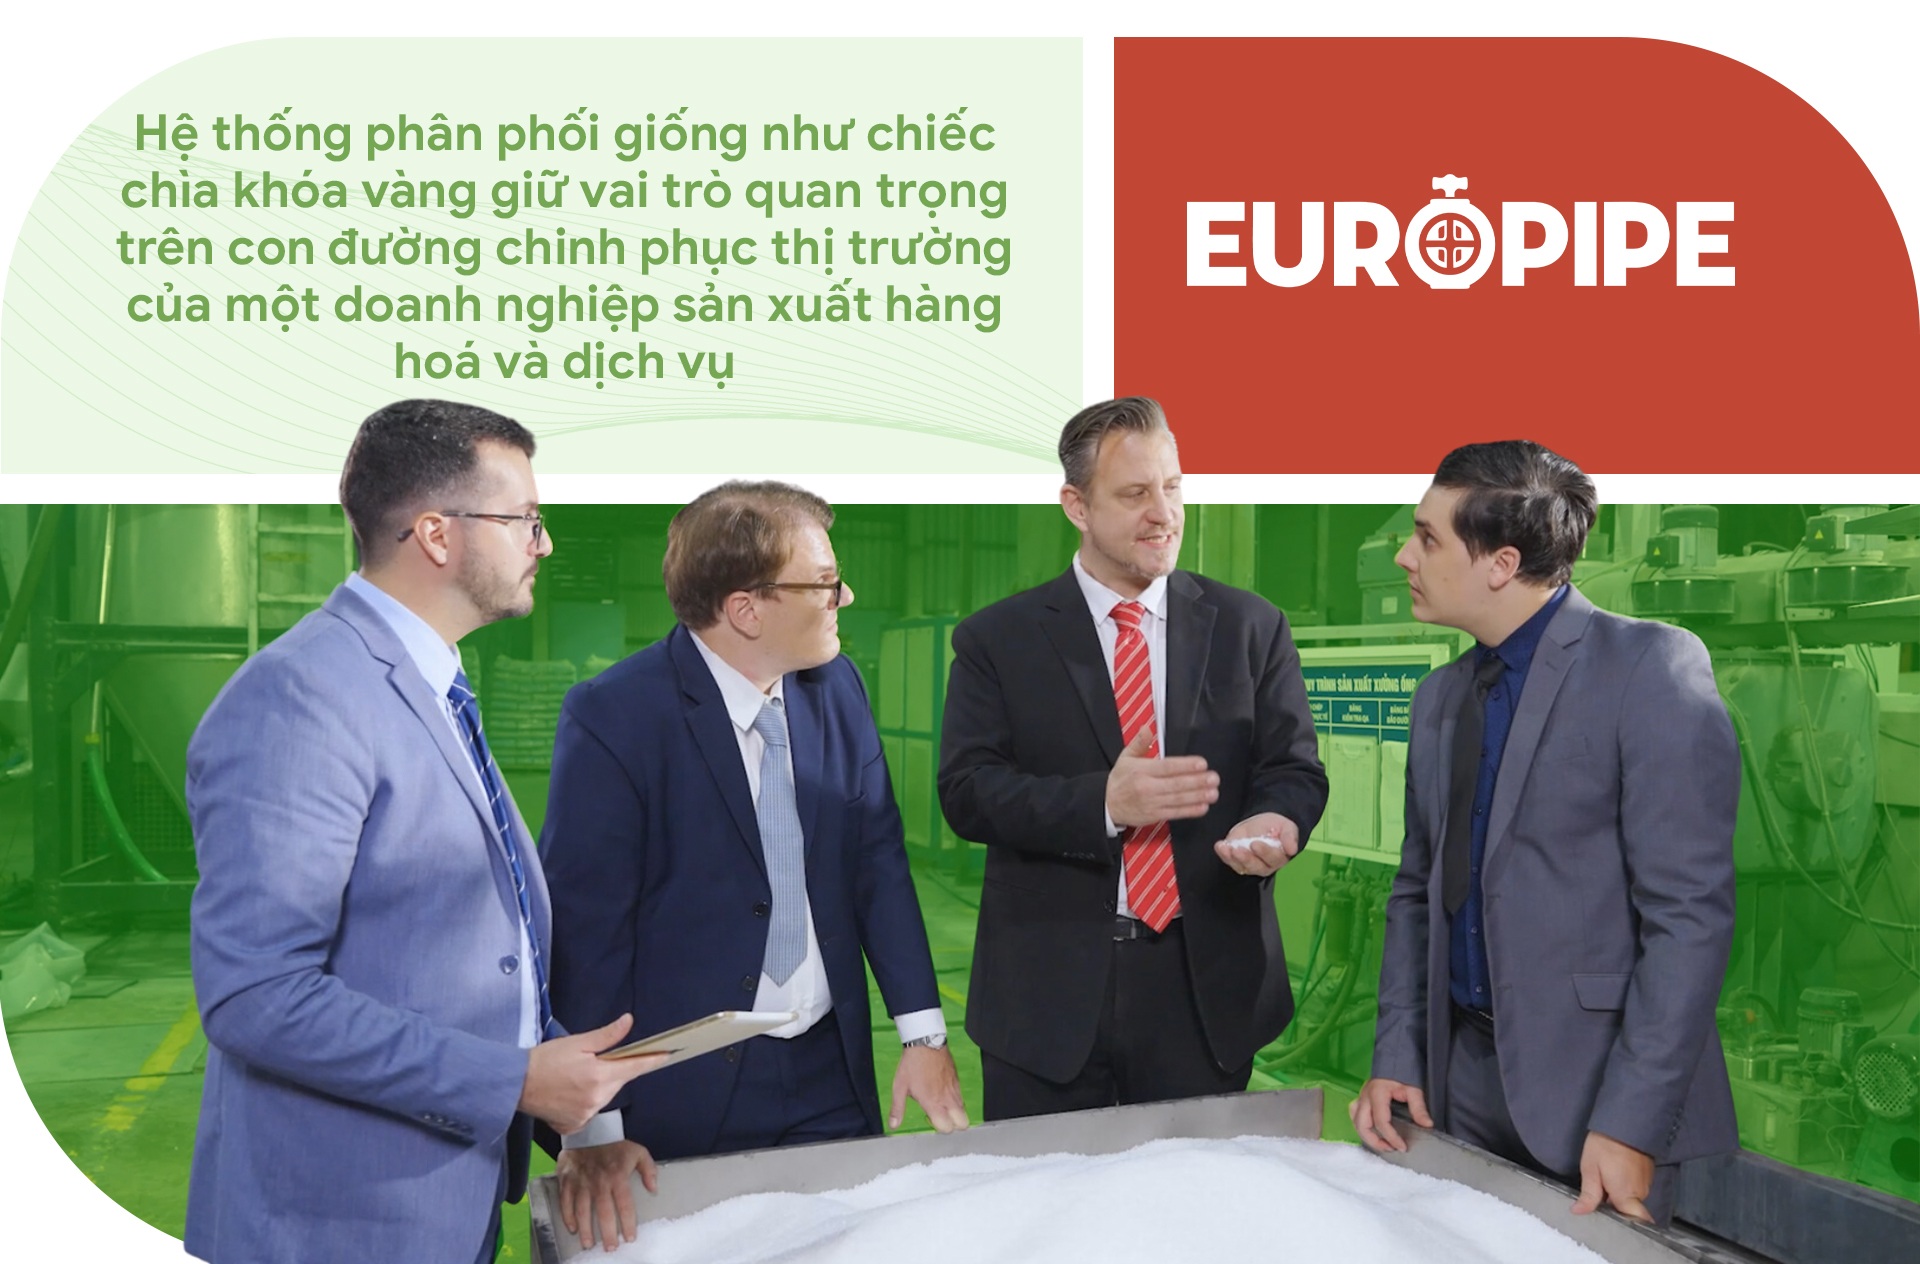 View - 5 yếu tố tạo nên sức hút với hệ thống phân phối của EUROPIPE | Báo Dân trí